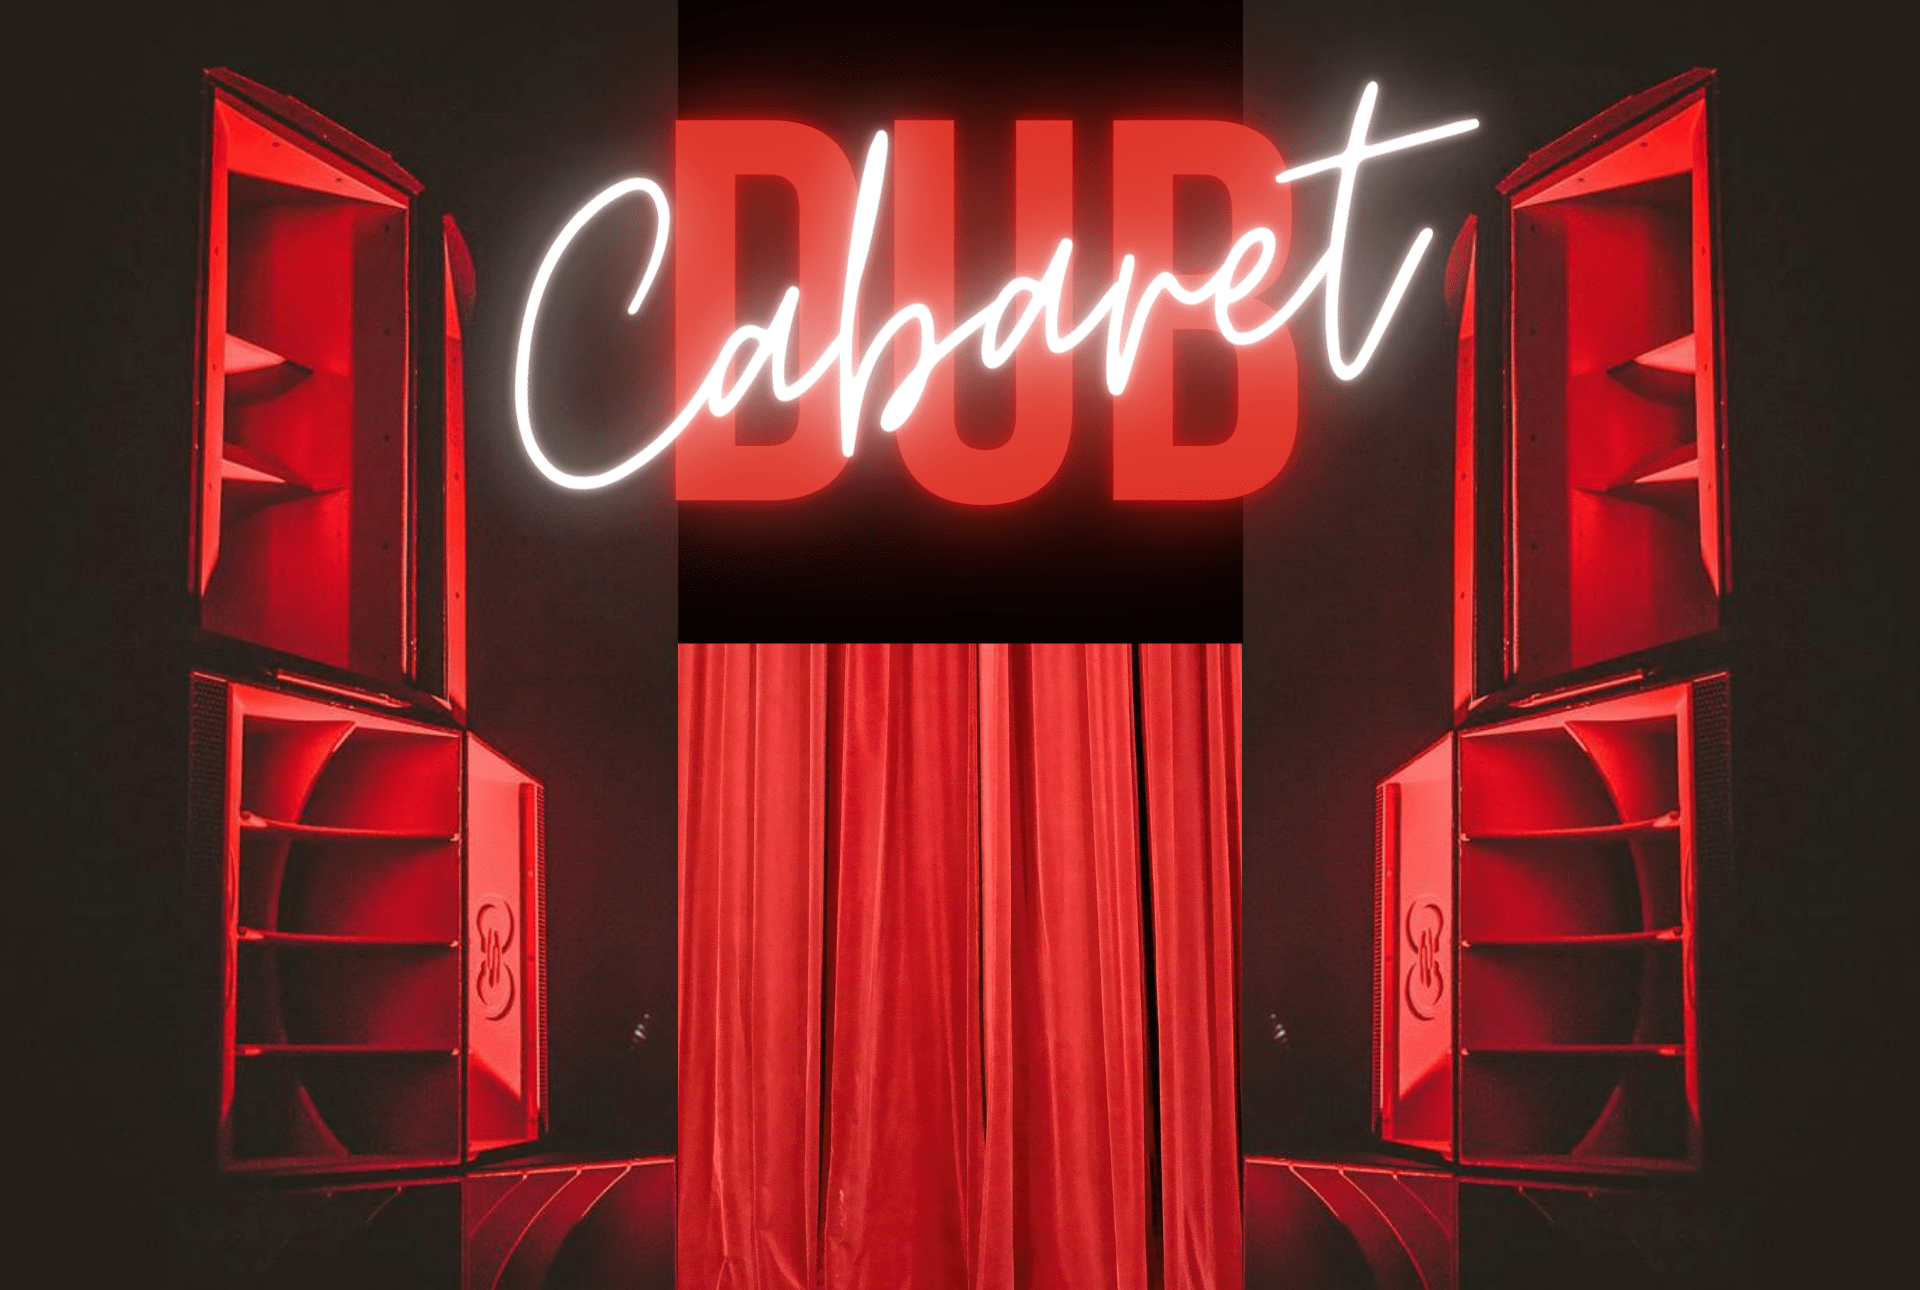 Cabaret Dub, Dub Shepherd, Nai Jah, Fabasstone, Anti-Bypass